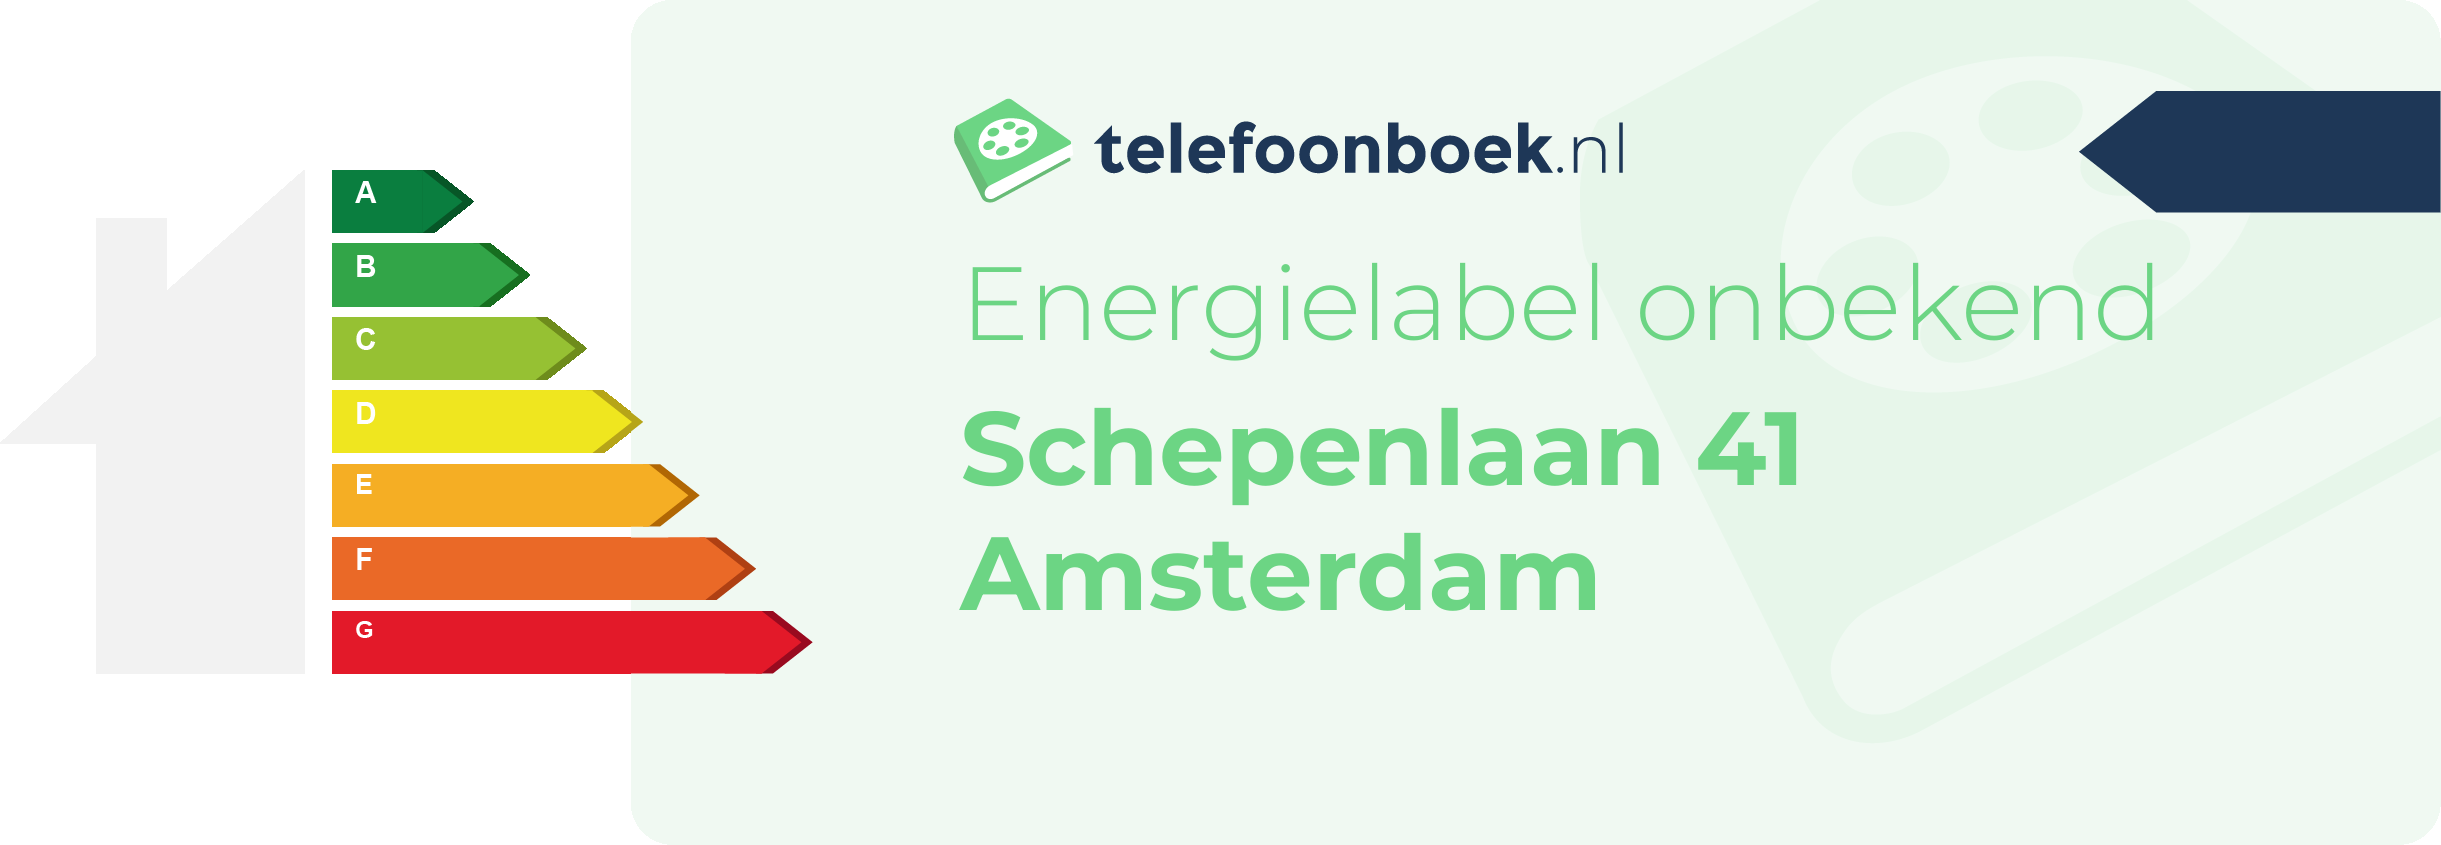 Energielabel Schepenlaan 41 Amsterdam